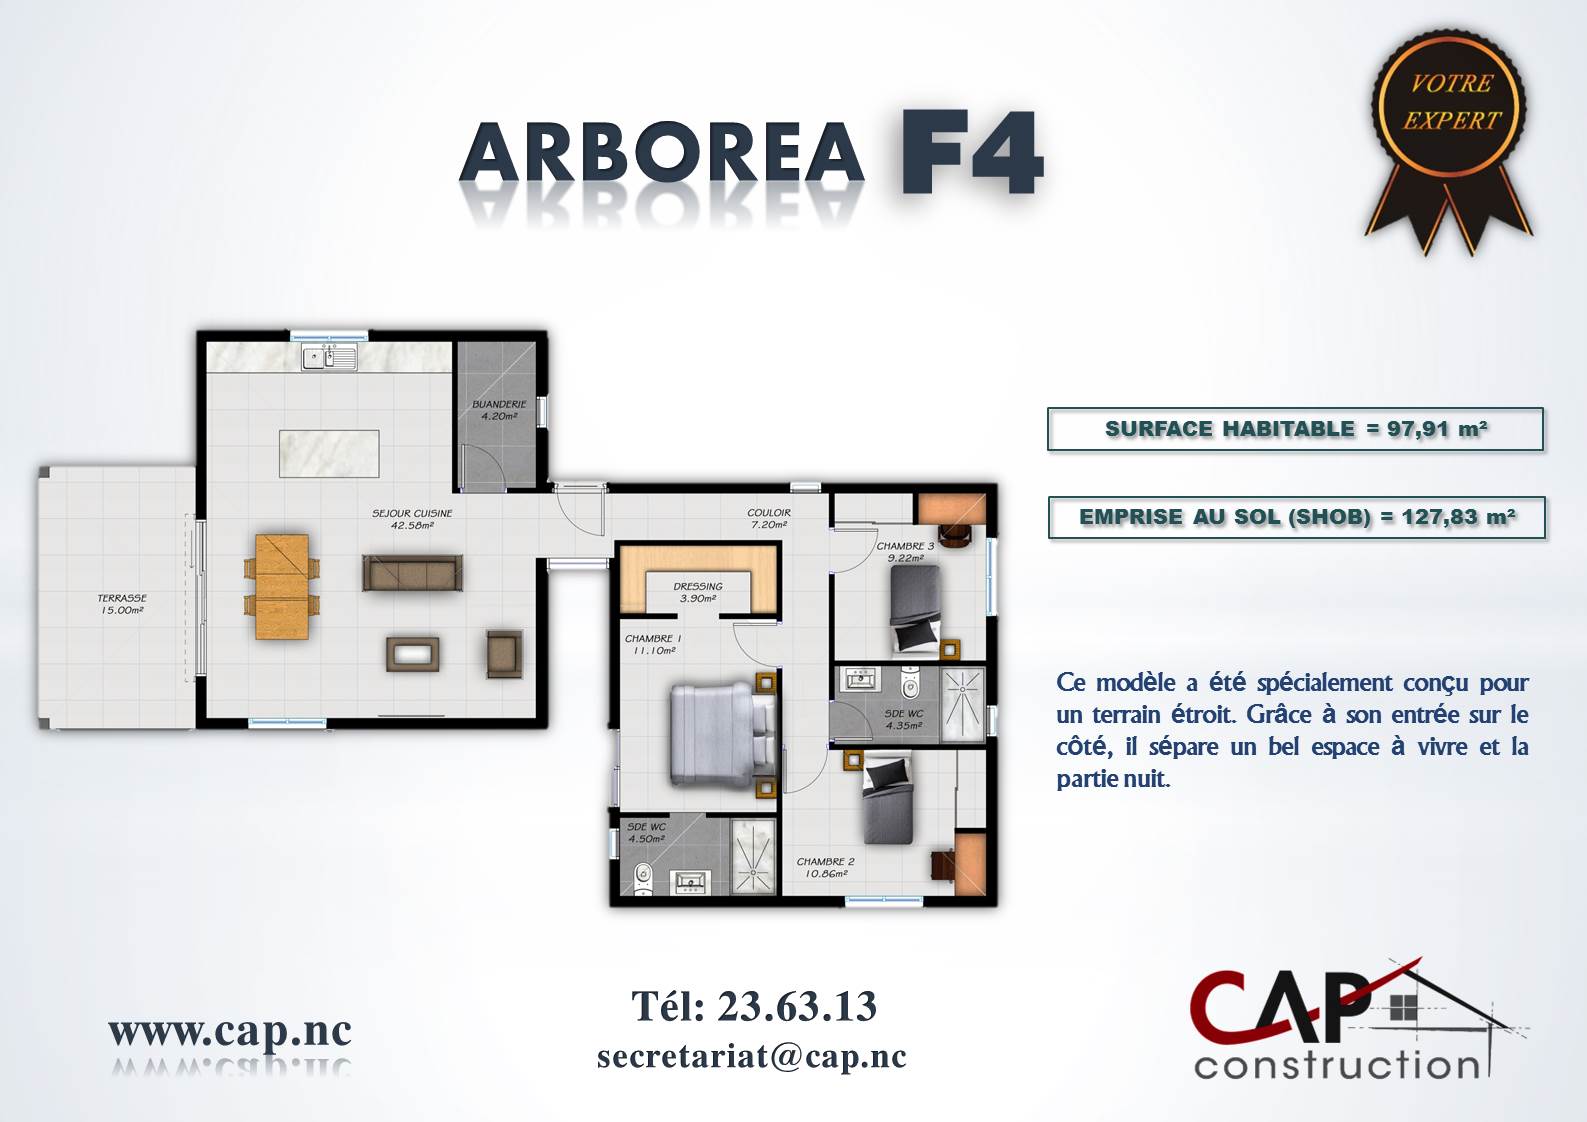 maison ARBOREA F4 plan Cap Construction